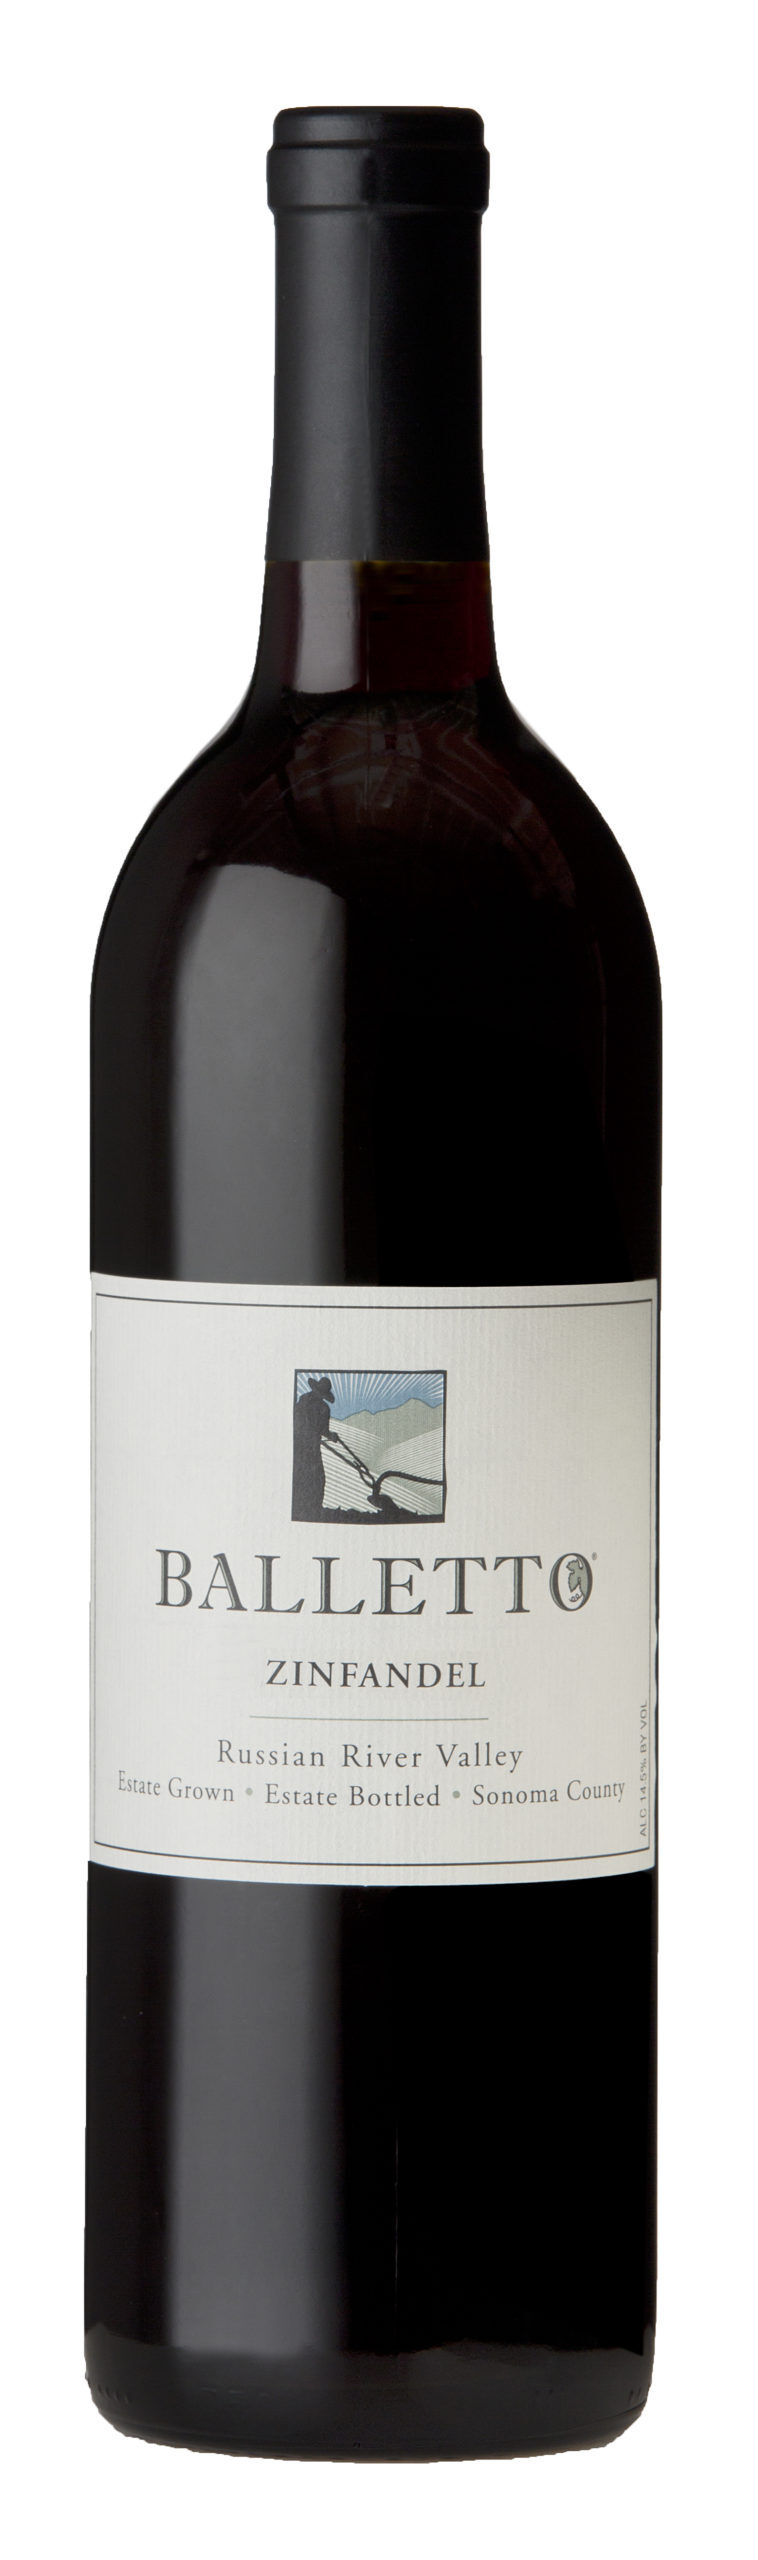 Balletto_Bottle-Shot_ZN-scaled.jpg